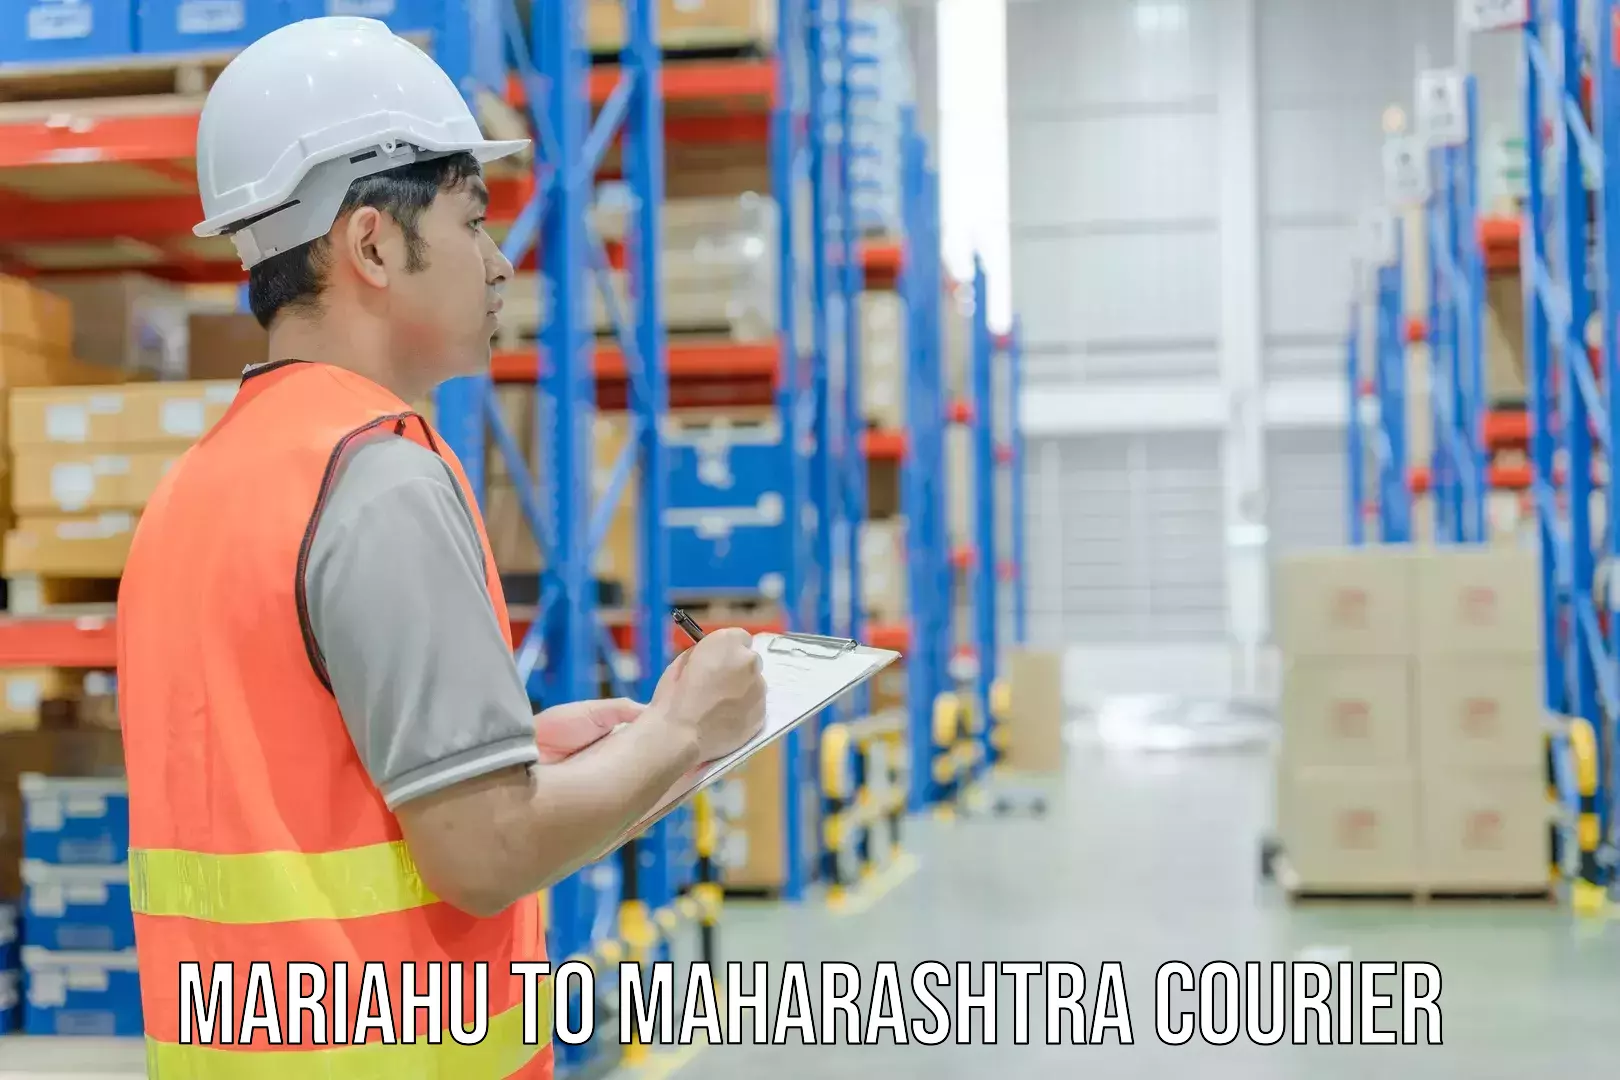 Customer-centric shipping in Mariahu to Maharashtra